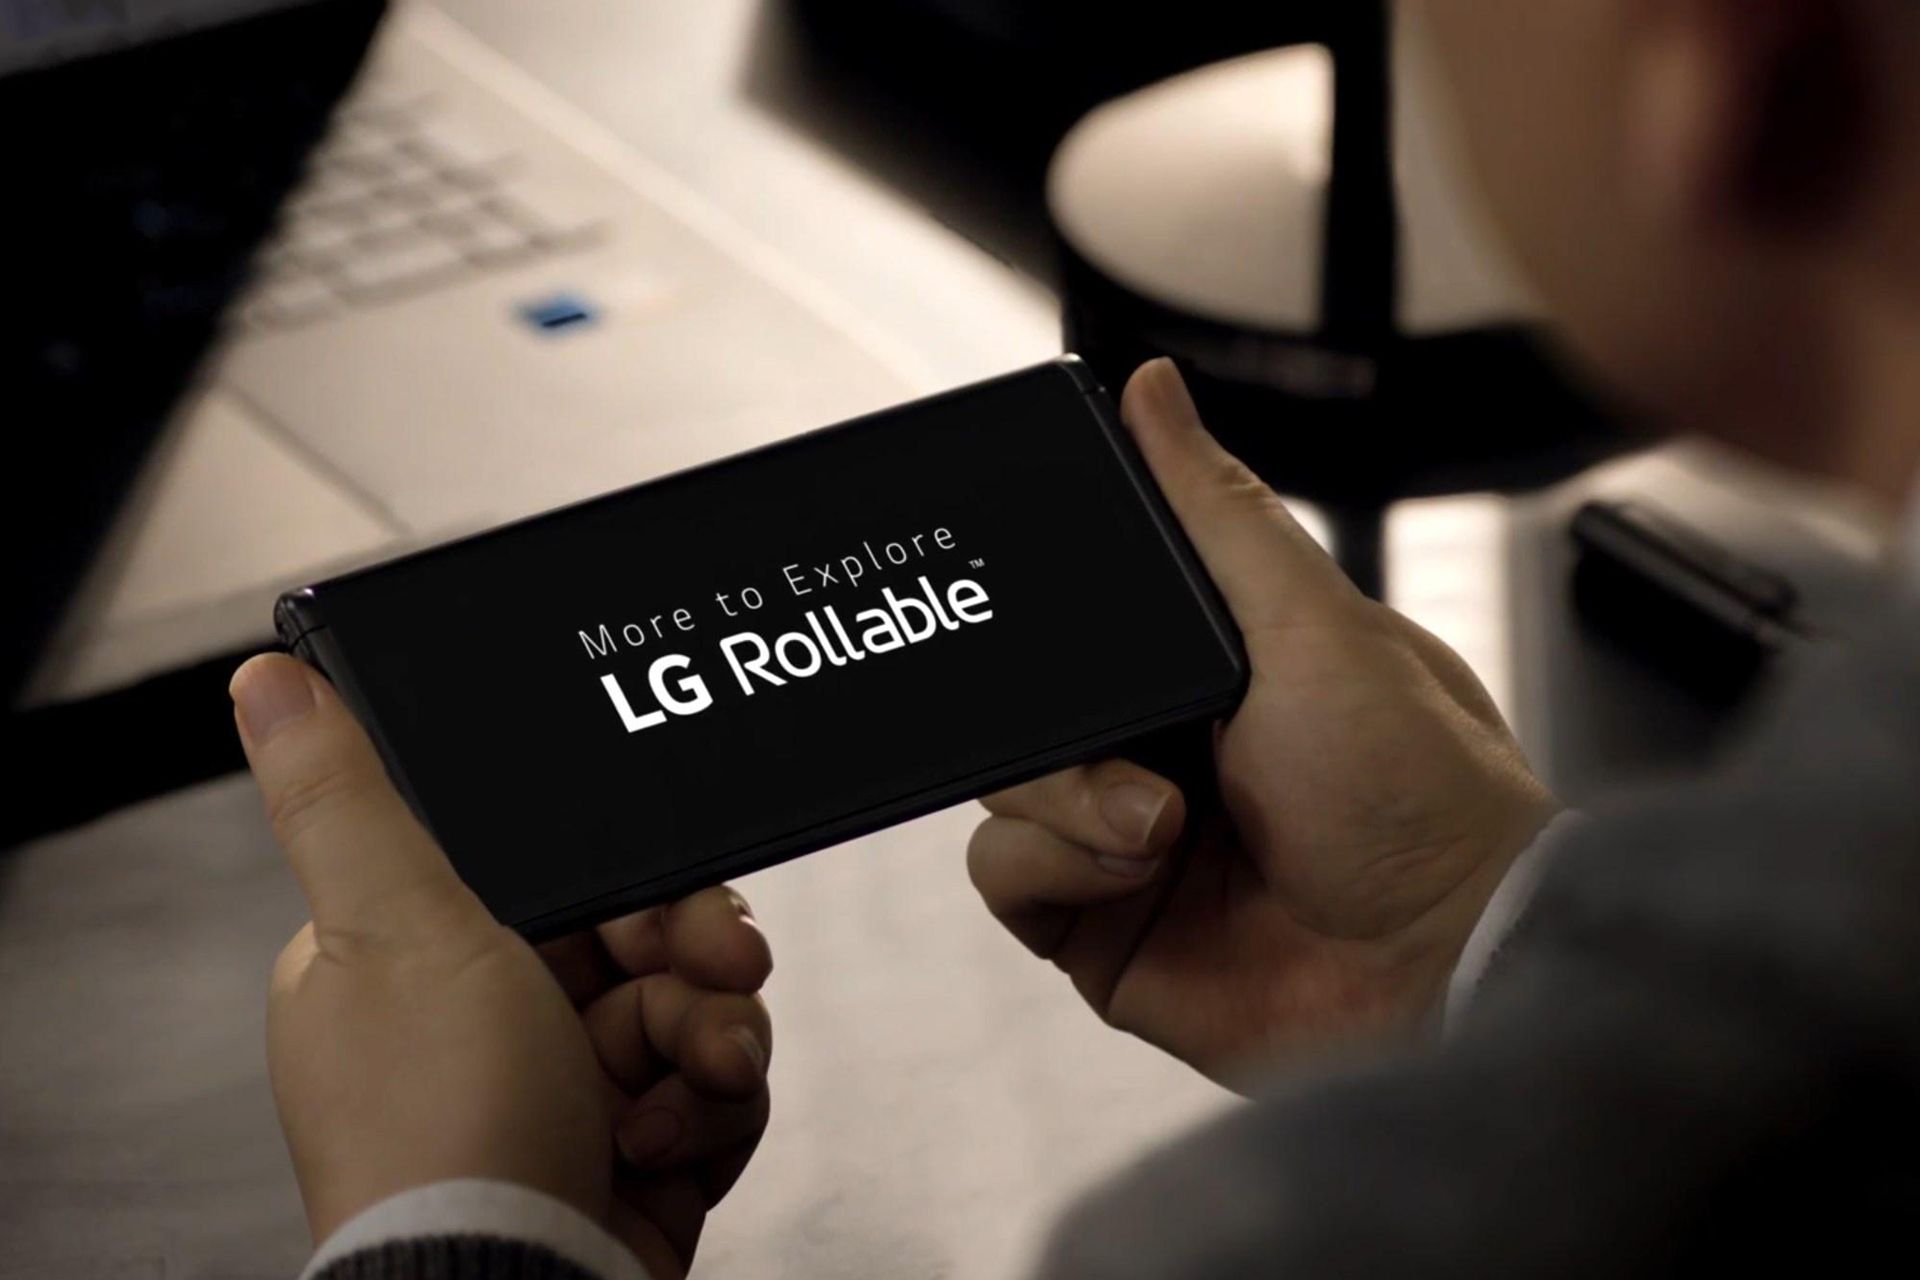 ال جی رولبل / LG Rollable / گوشی رول شدنی الجی در دست یک مرد